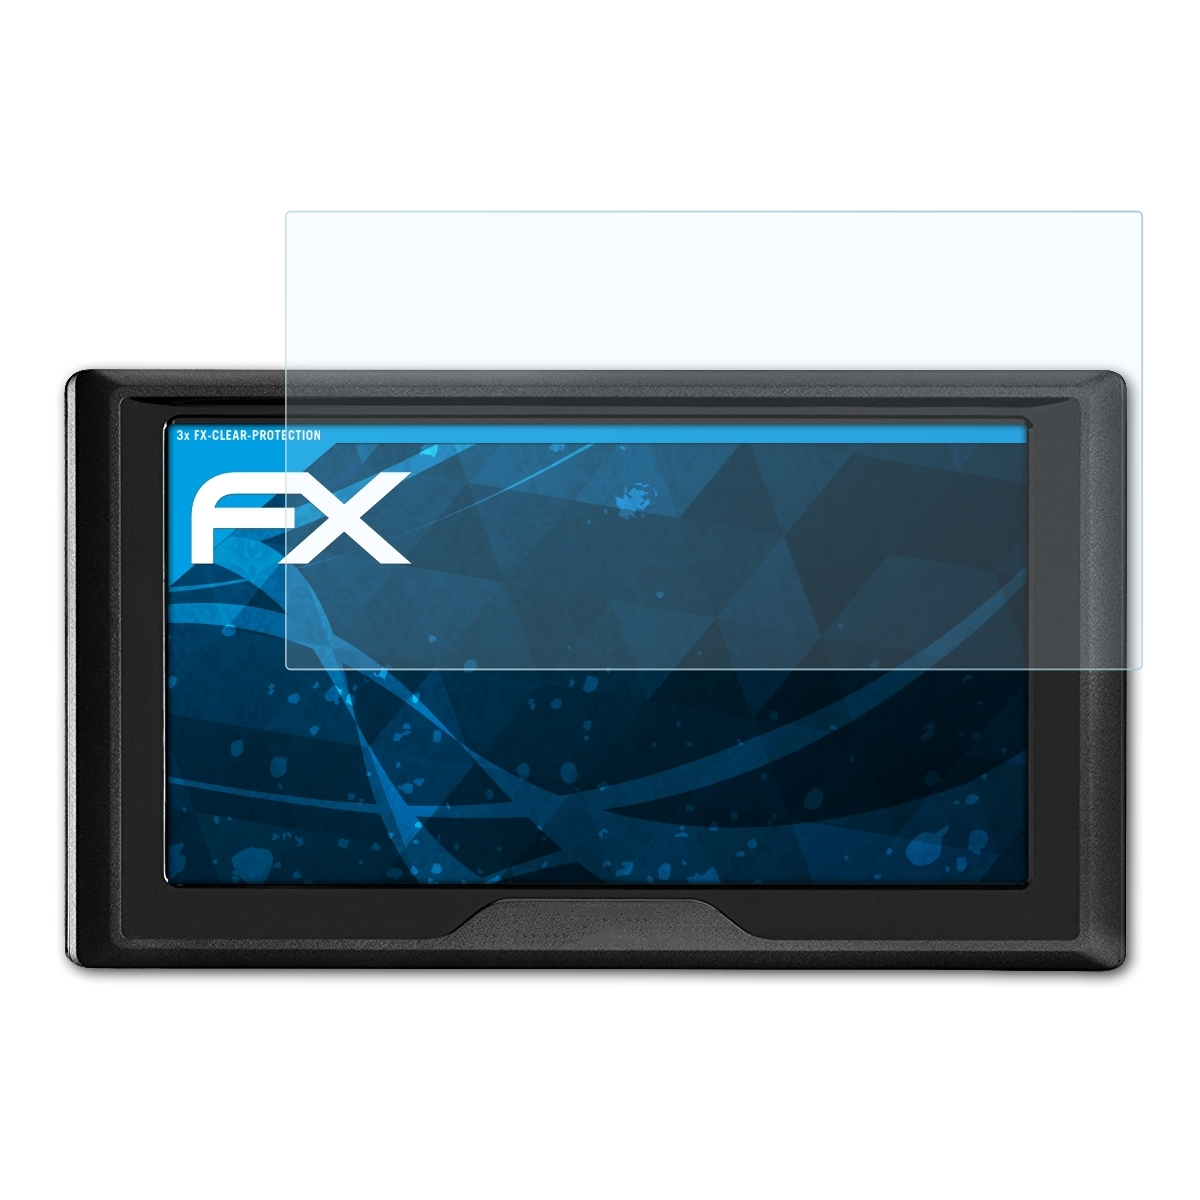 Garmin 3x Drive 61LMT-S) Displayschutz(für FX-Clear ATFOLIX